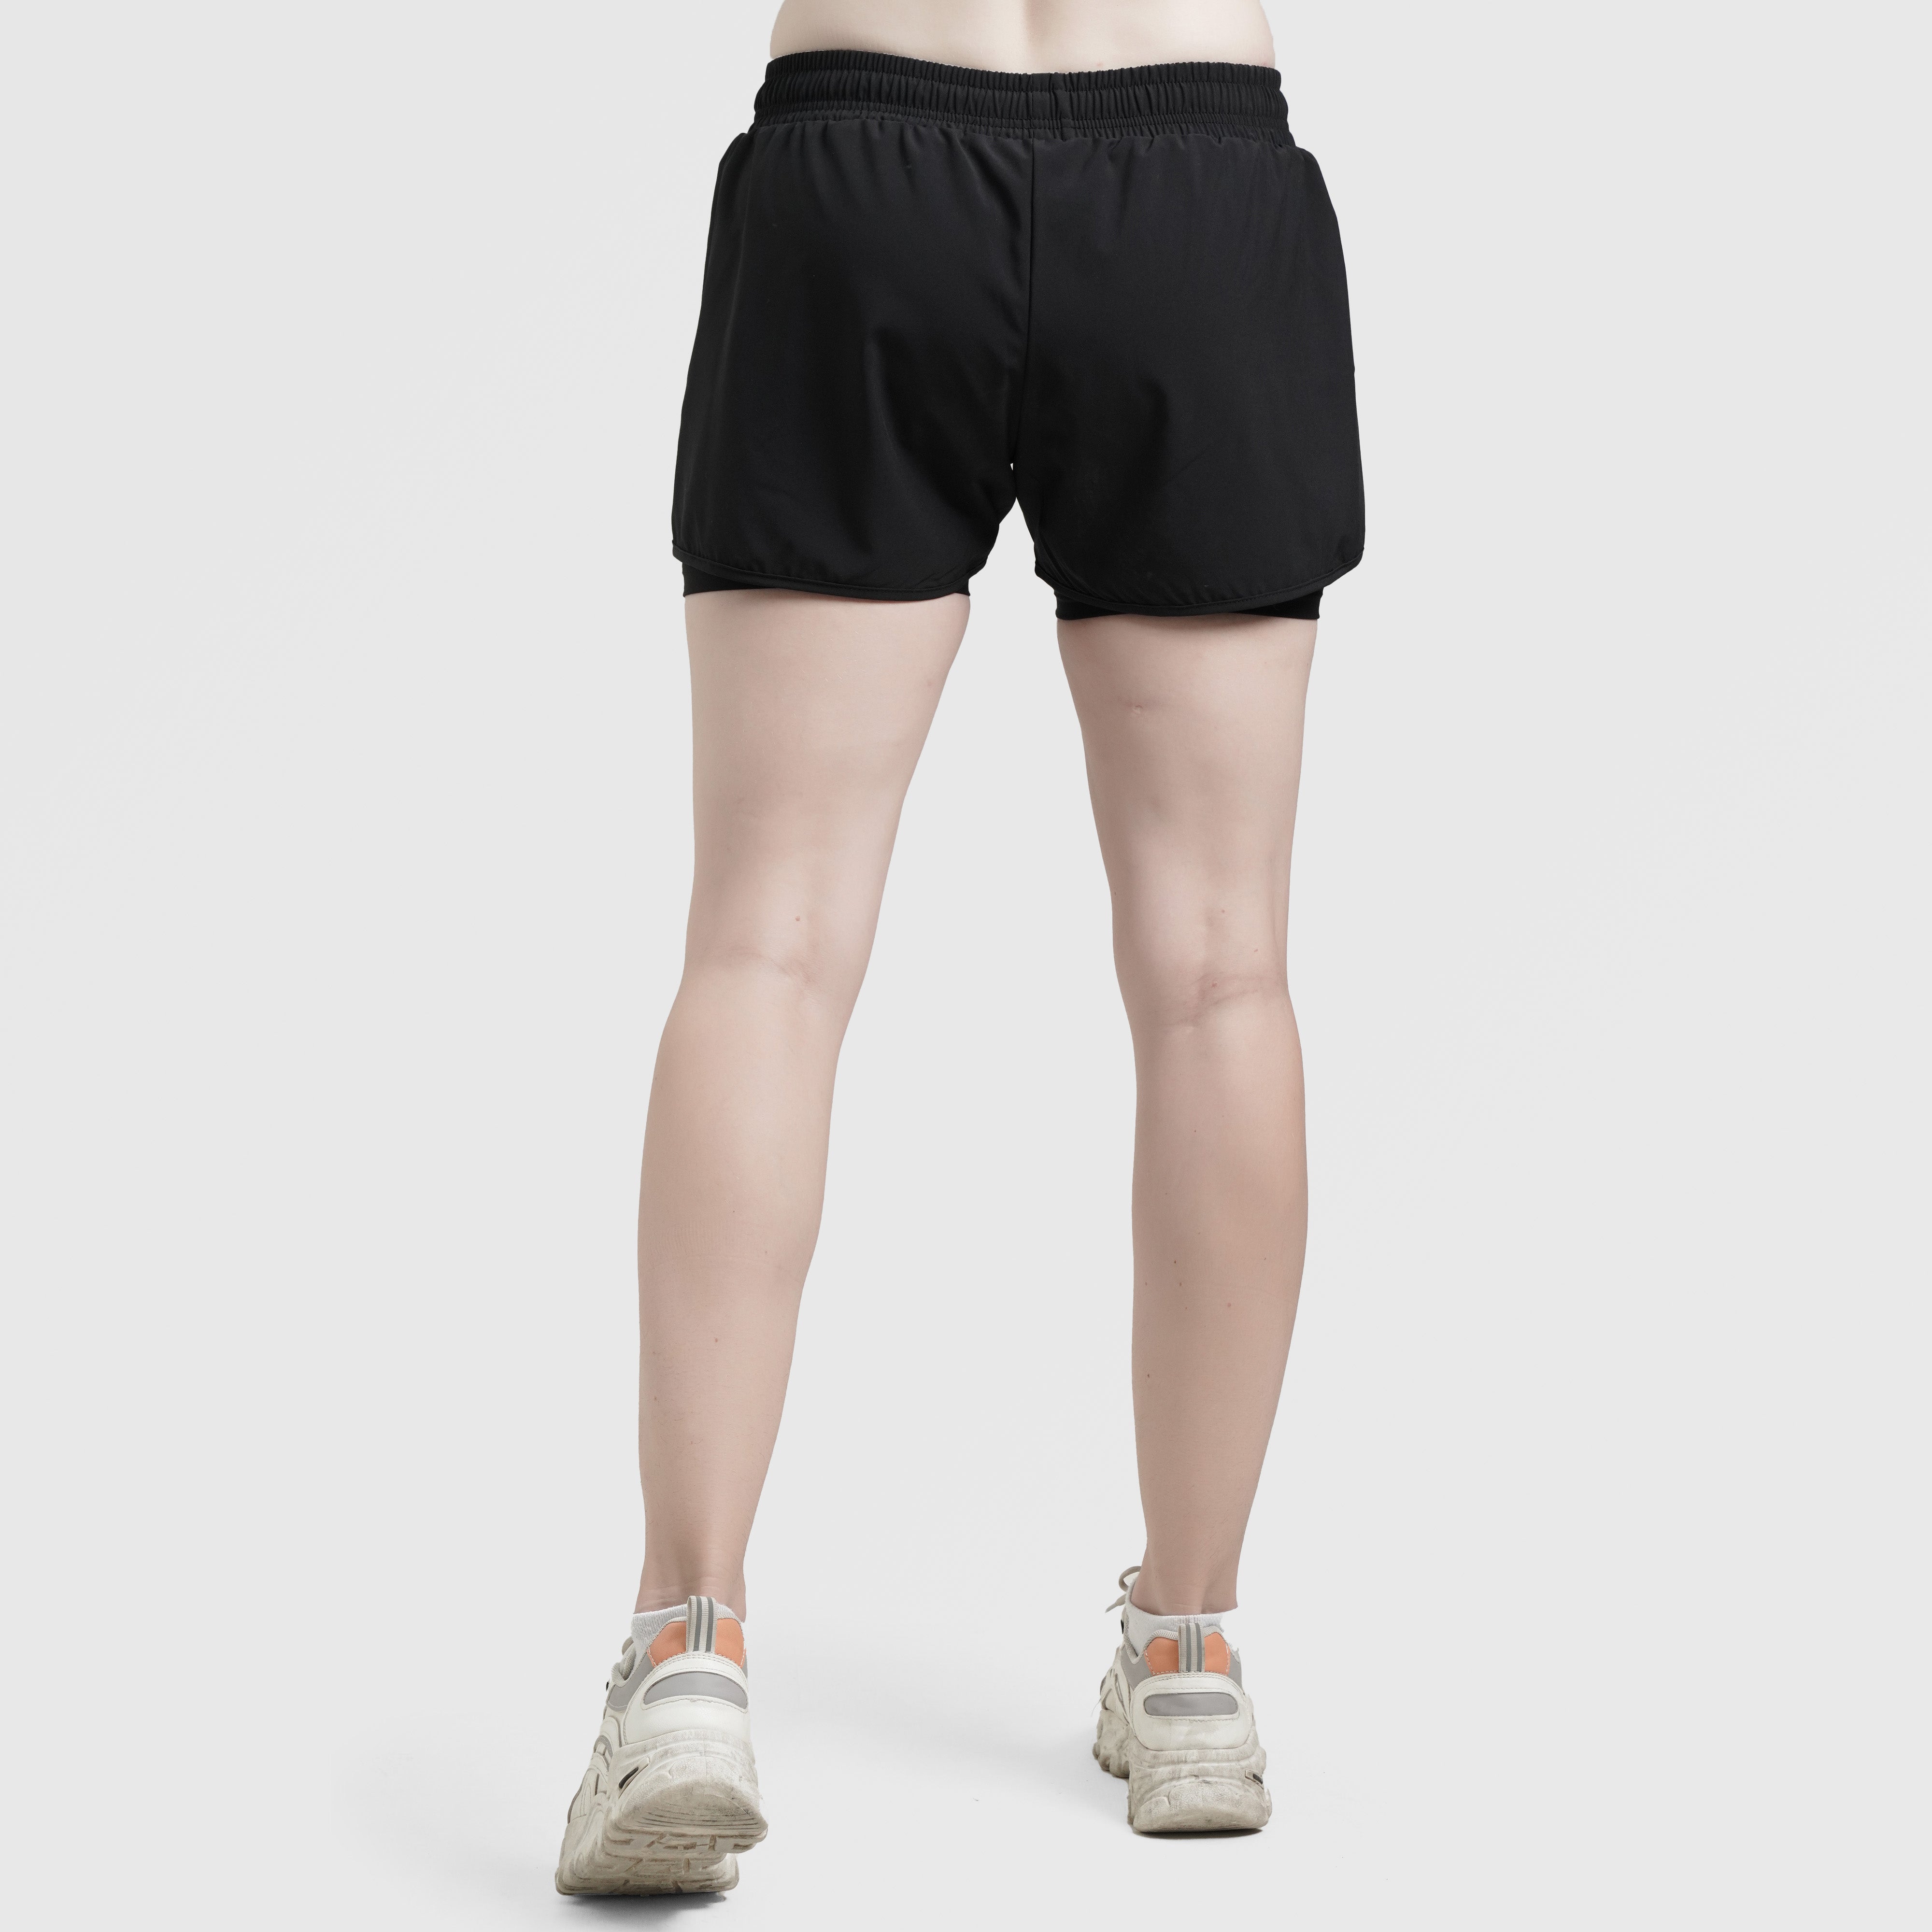 Erge Shorts (Black)